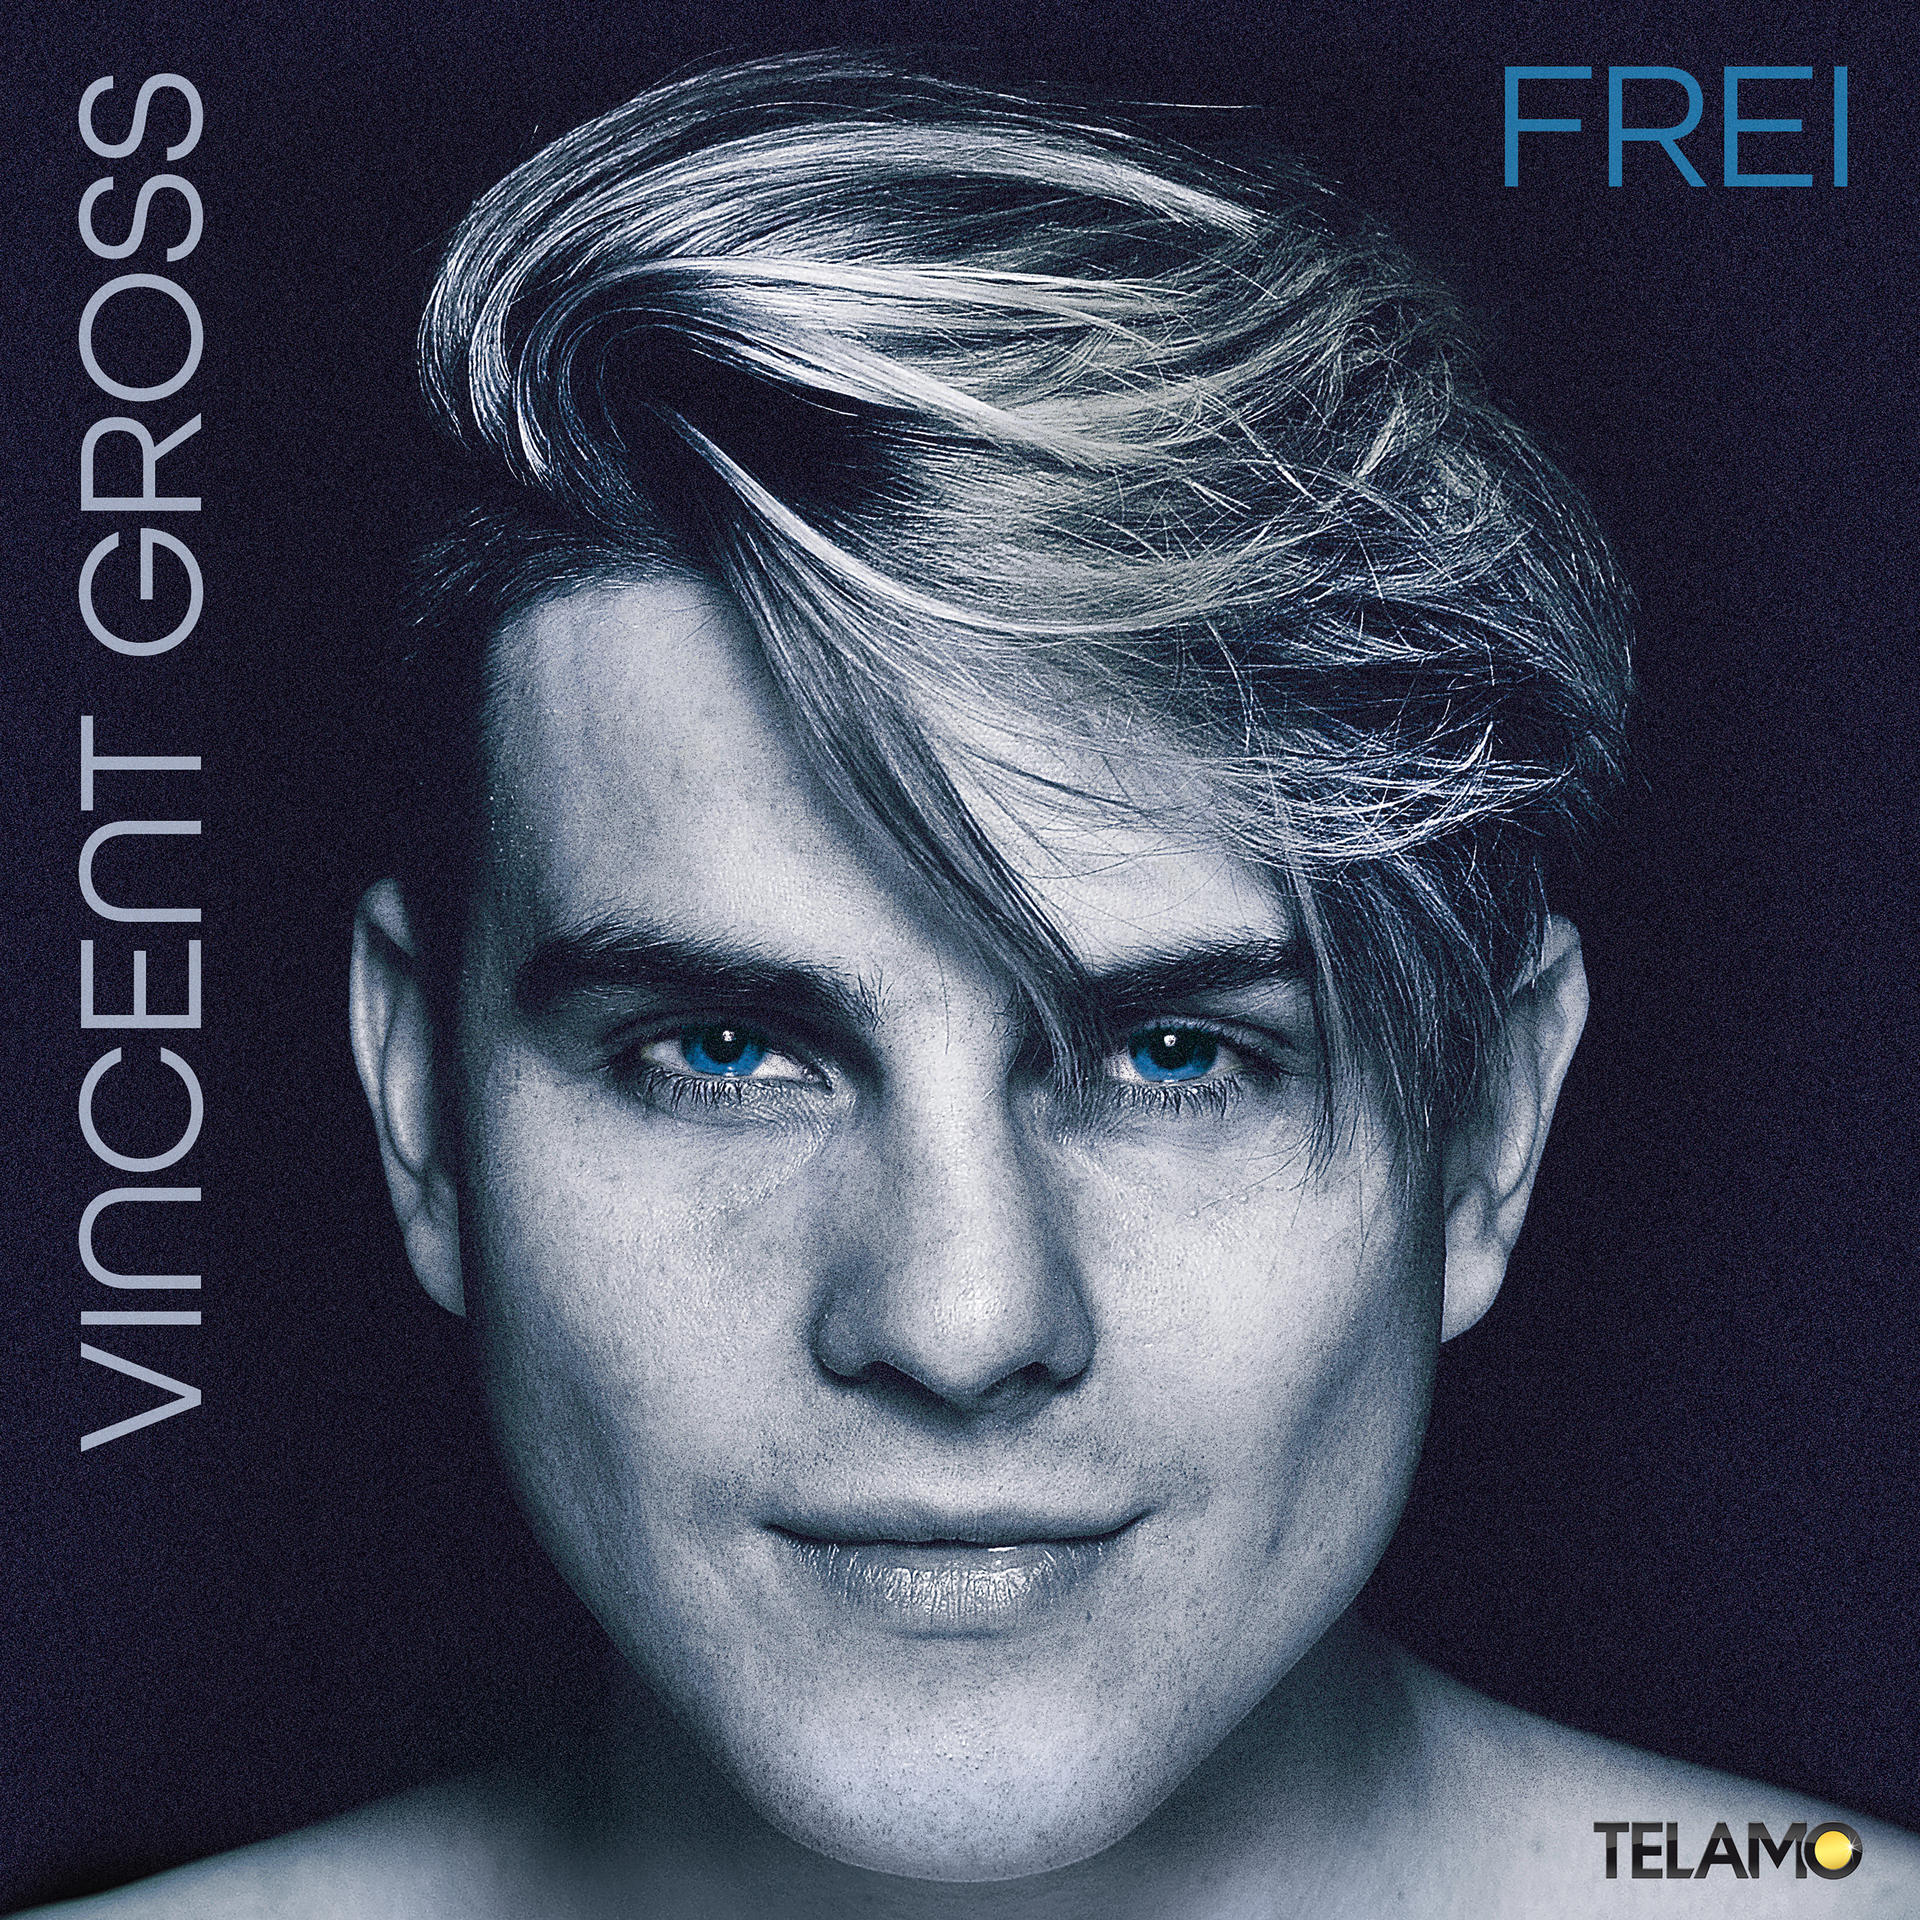 Vincent Gross - Frei - (CD)